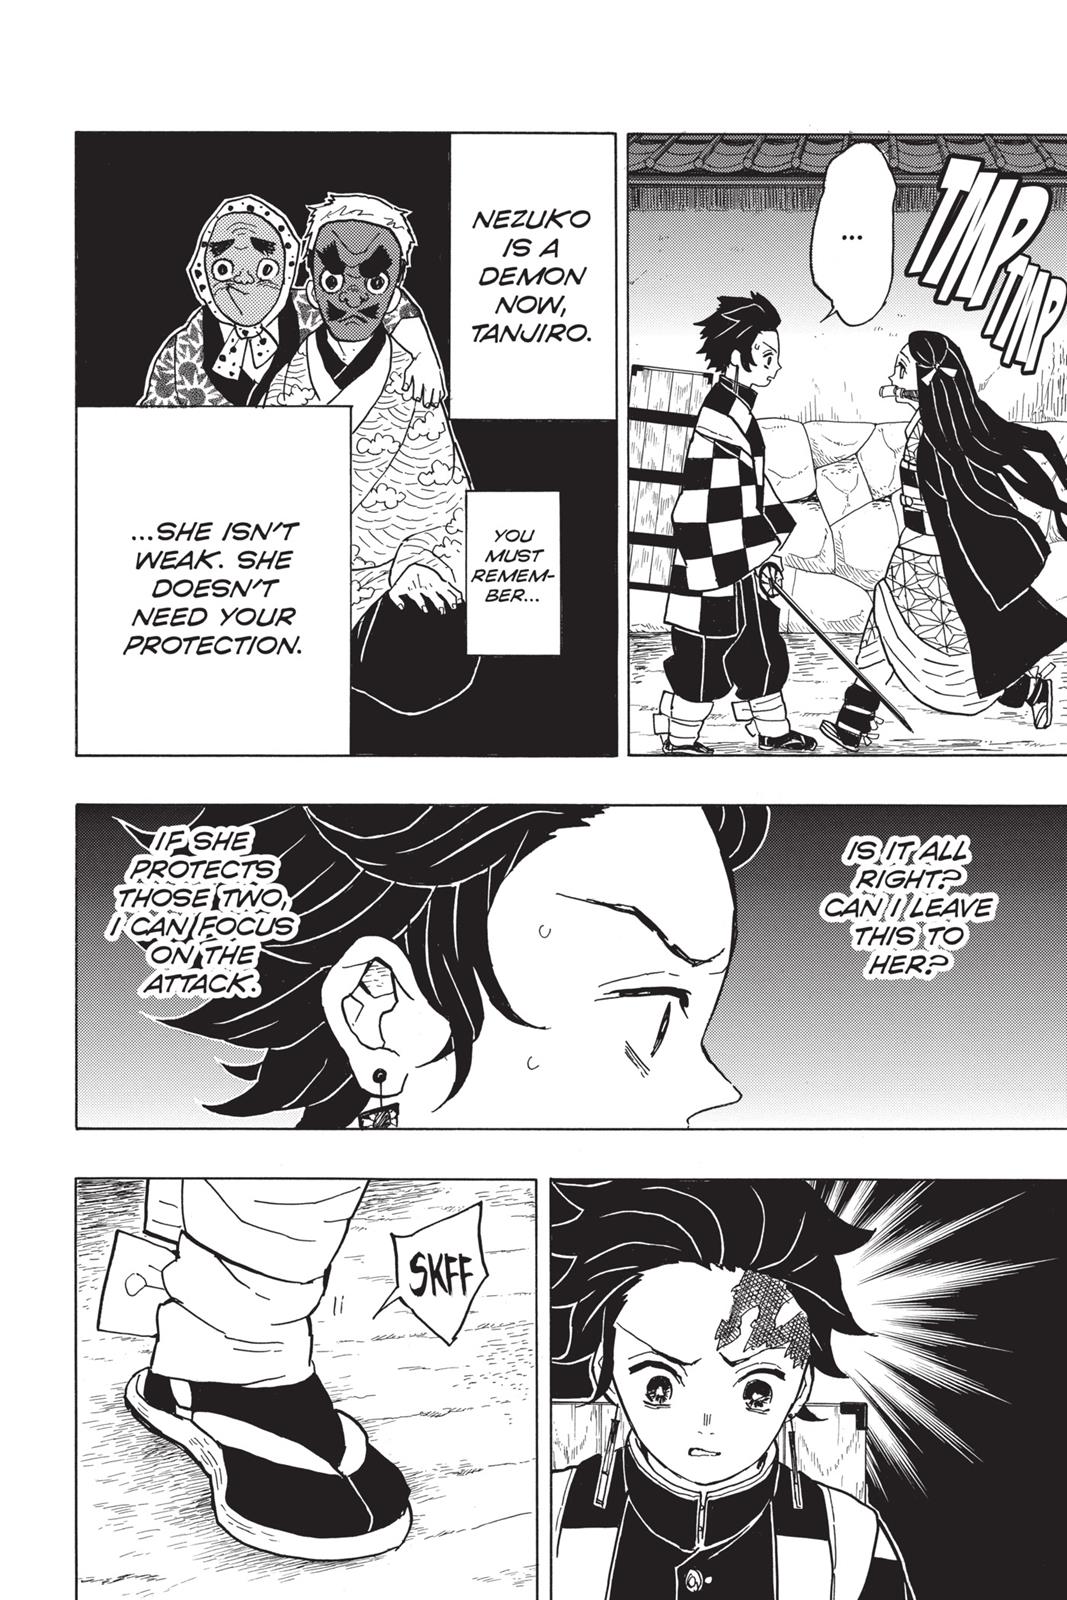 Demon Slayer Manga Manga Chapter - 12 - image 4